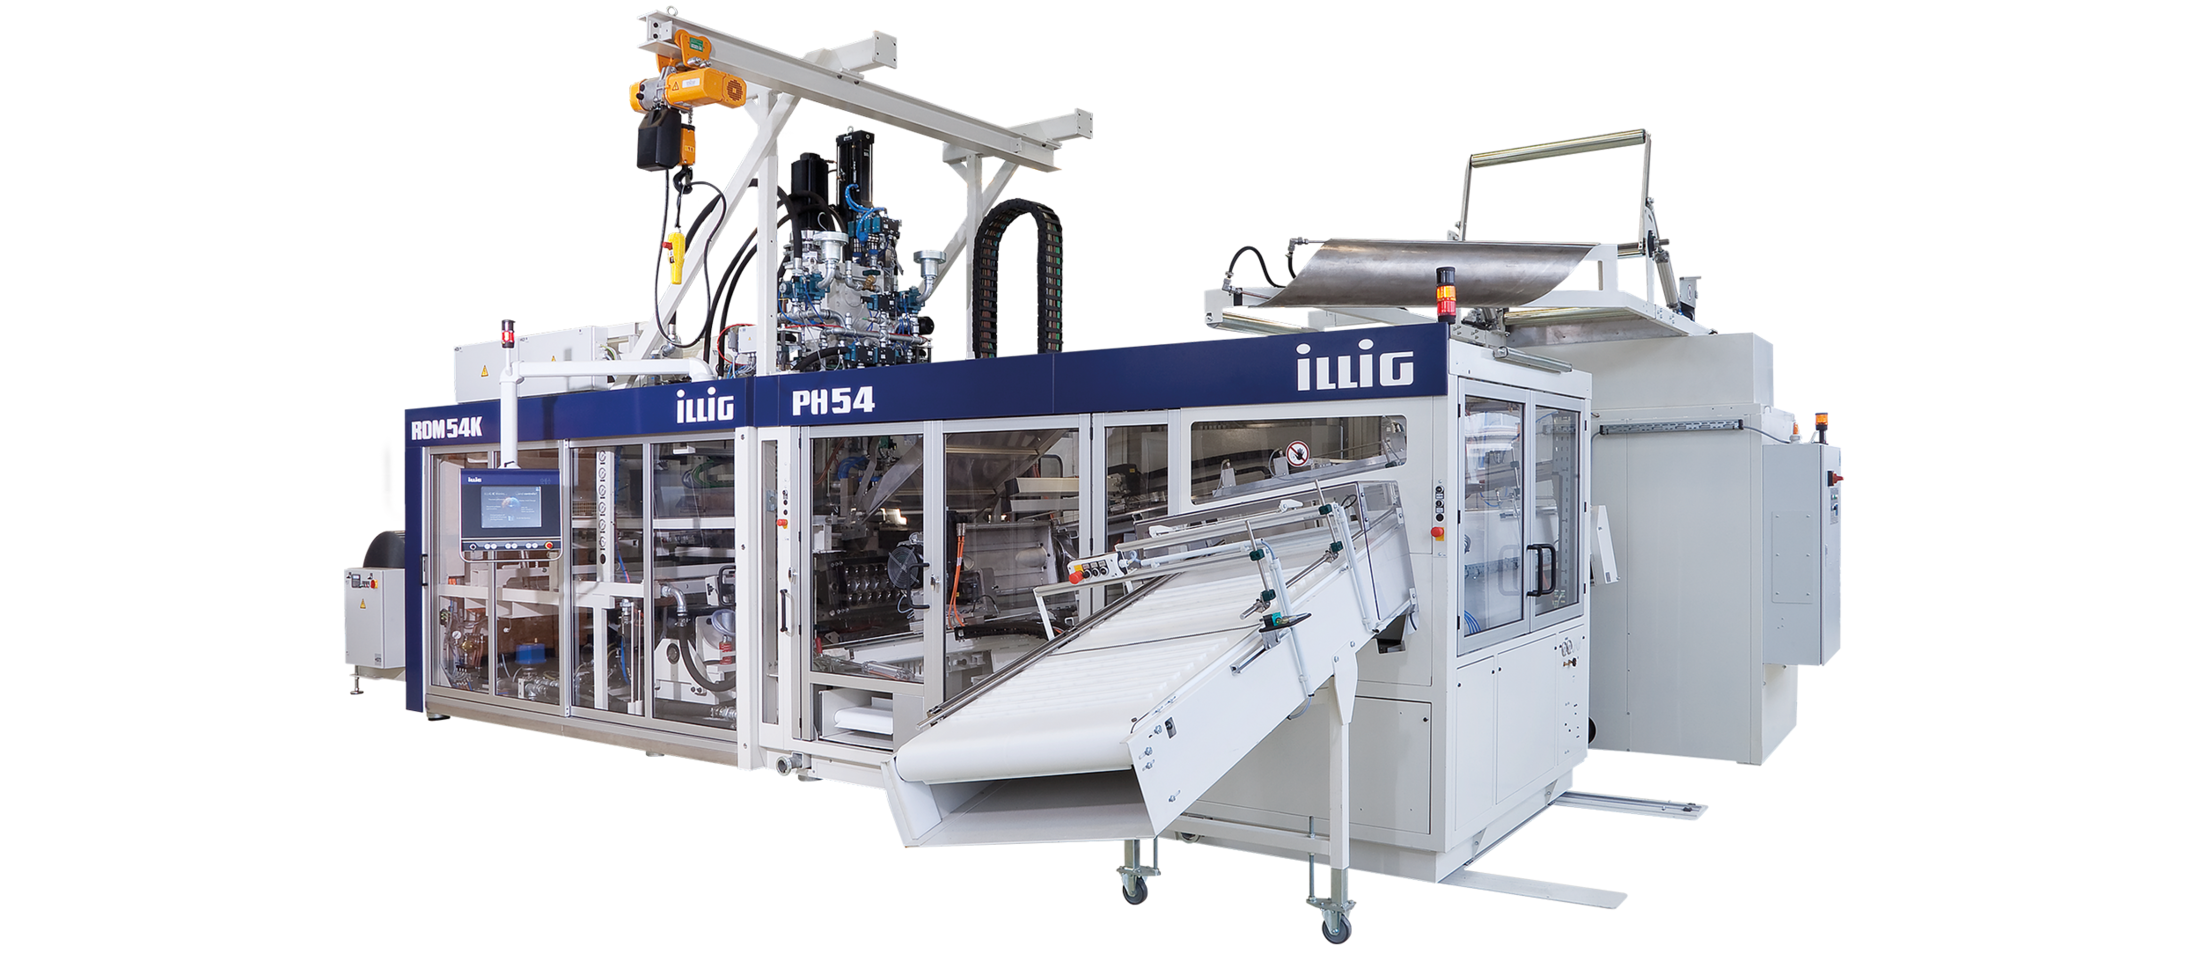 ILLIG RDM 54K automatic roll-fed machine for forming/punching operation | © ILLIG Maschinenbau